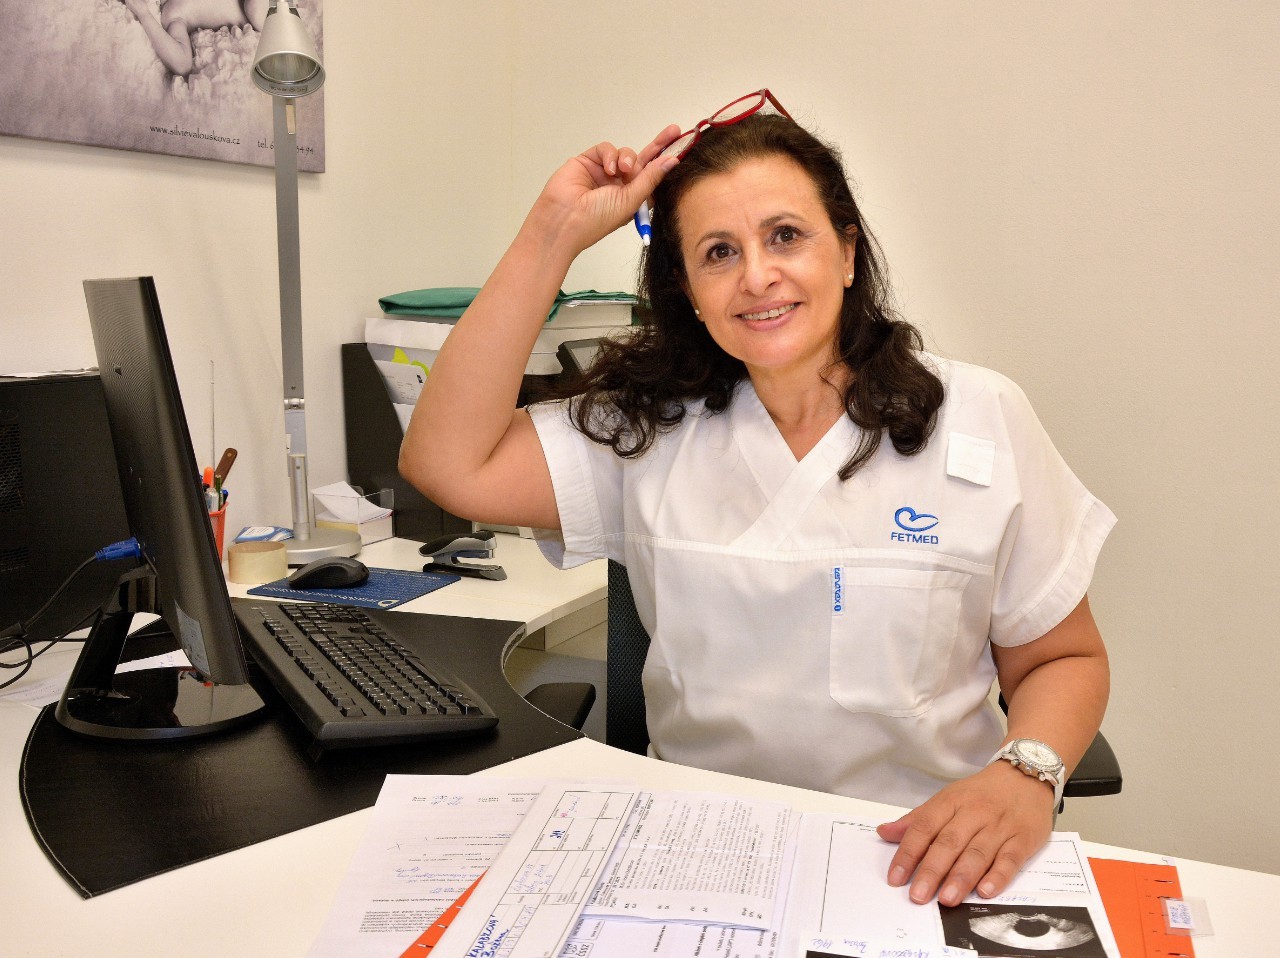 Dott.ssa Dhaifalah e la clinica FETMED: migliorare l'assistenza sanitaria per le donne nella Repubblica Ceca